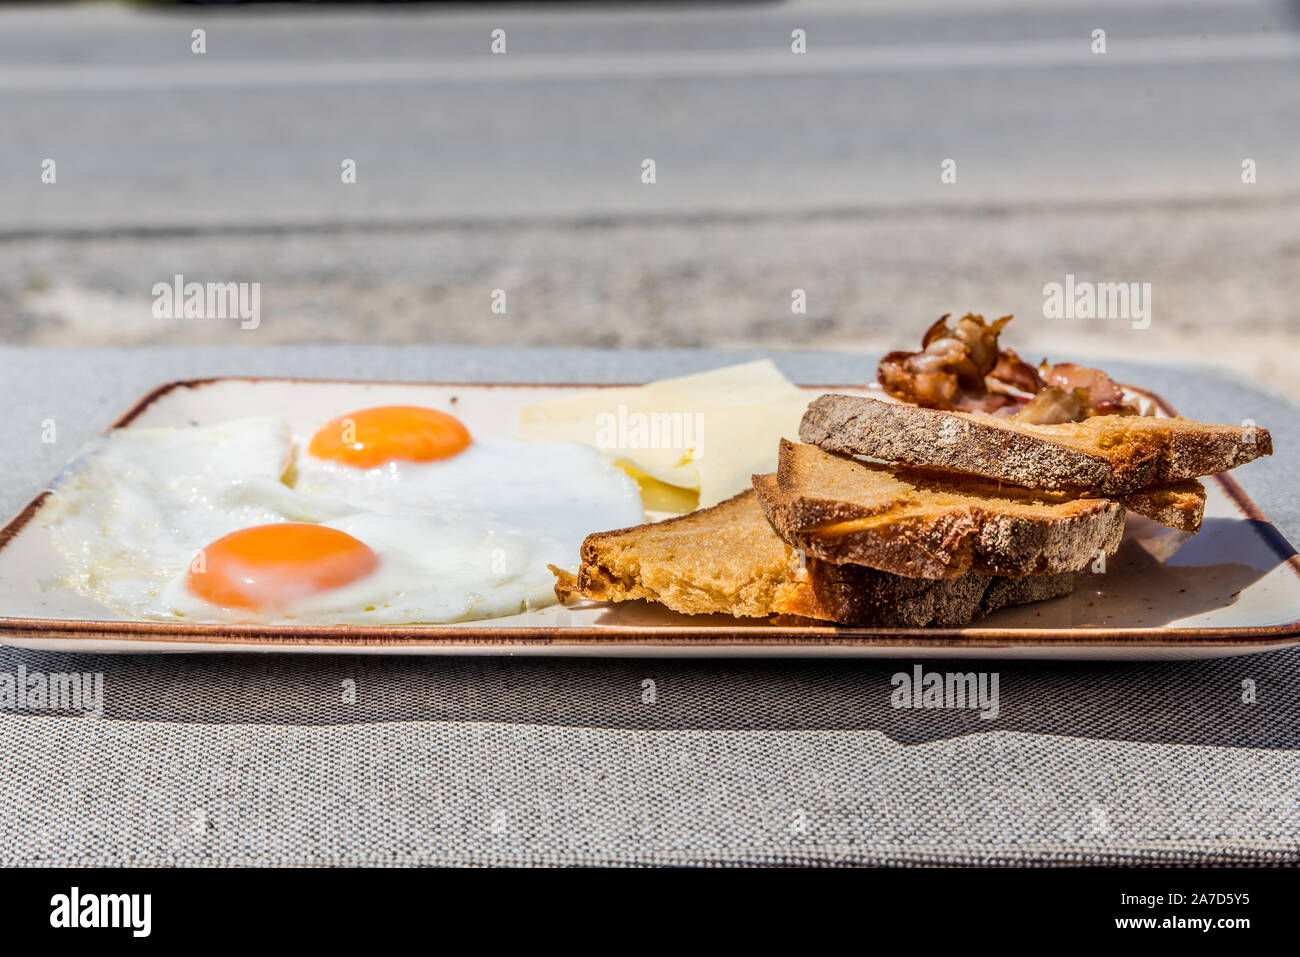 Une assiette de petit-déjeuner avec des œufs, tomate, pain, fromage et bacon graviera Banque D'Images